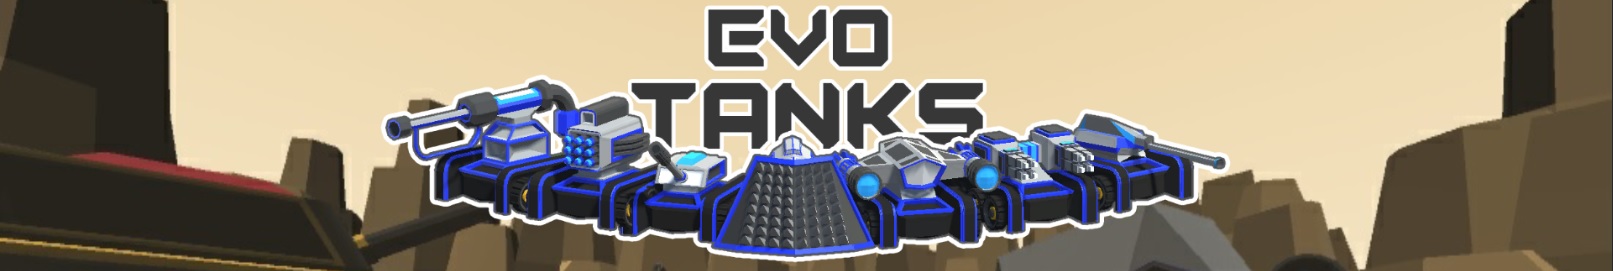 Evo Tanks